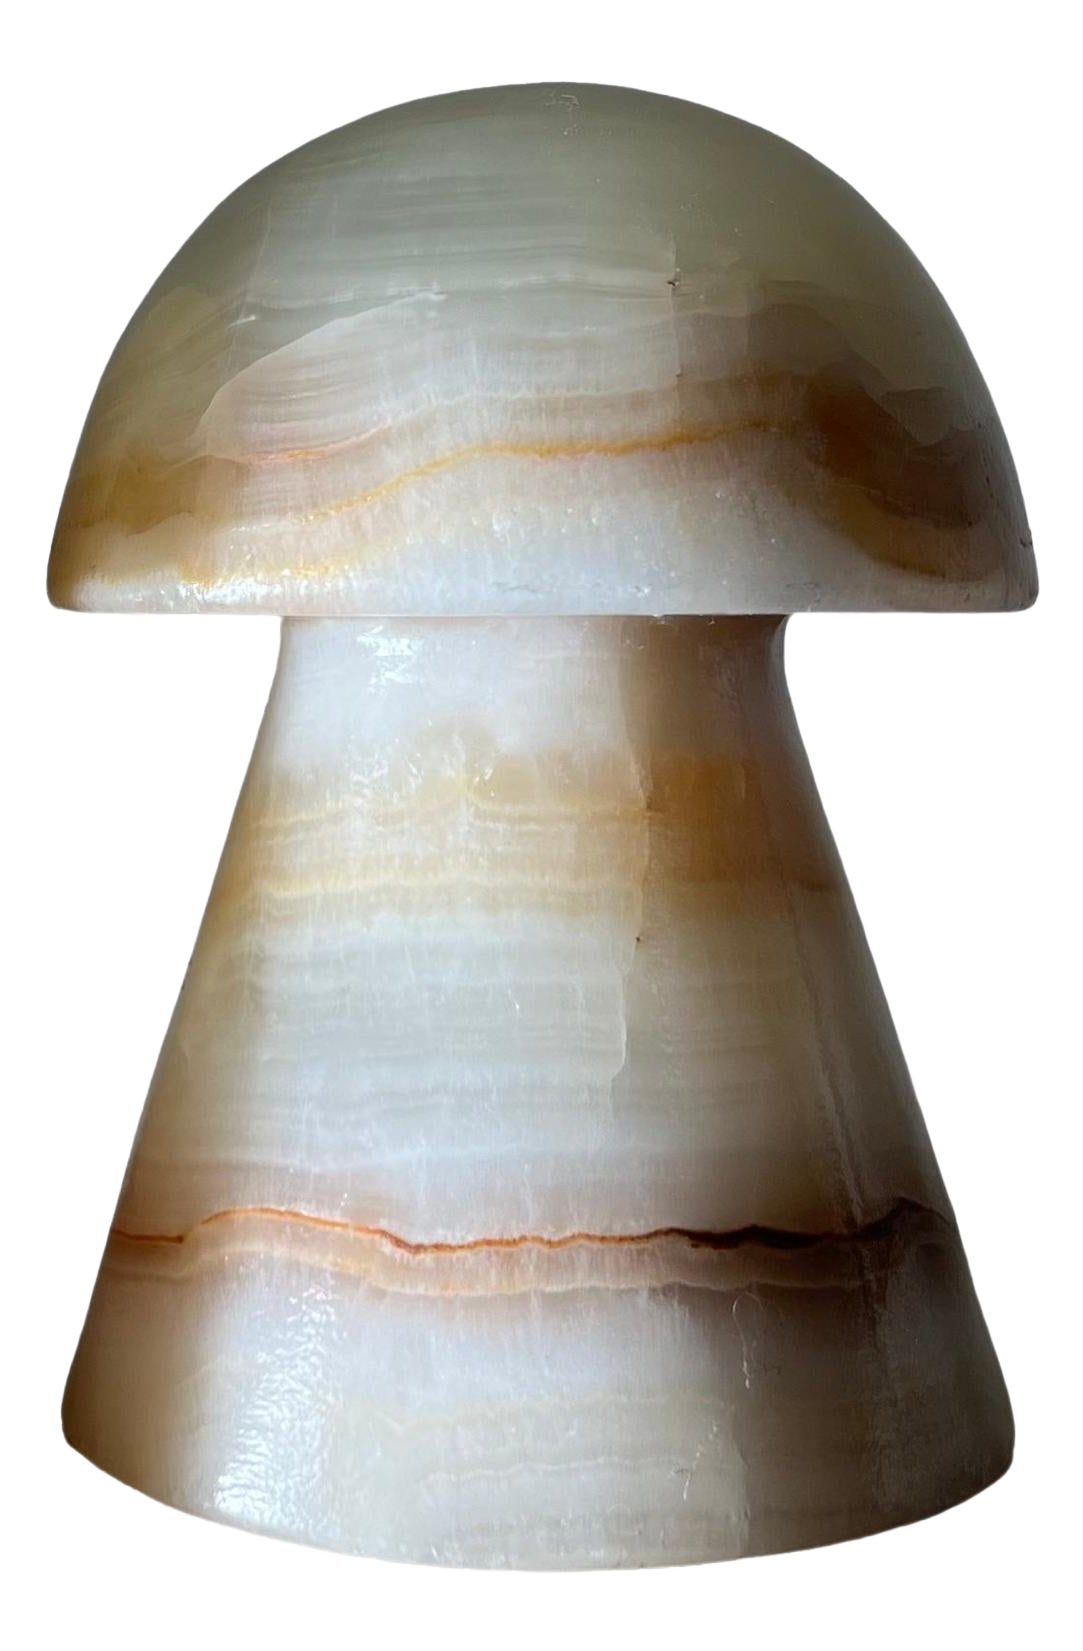 Onyxová malá houba